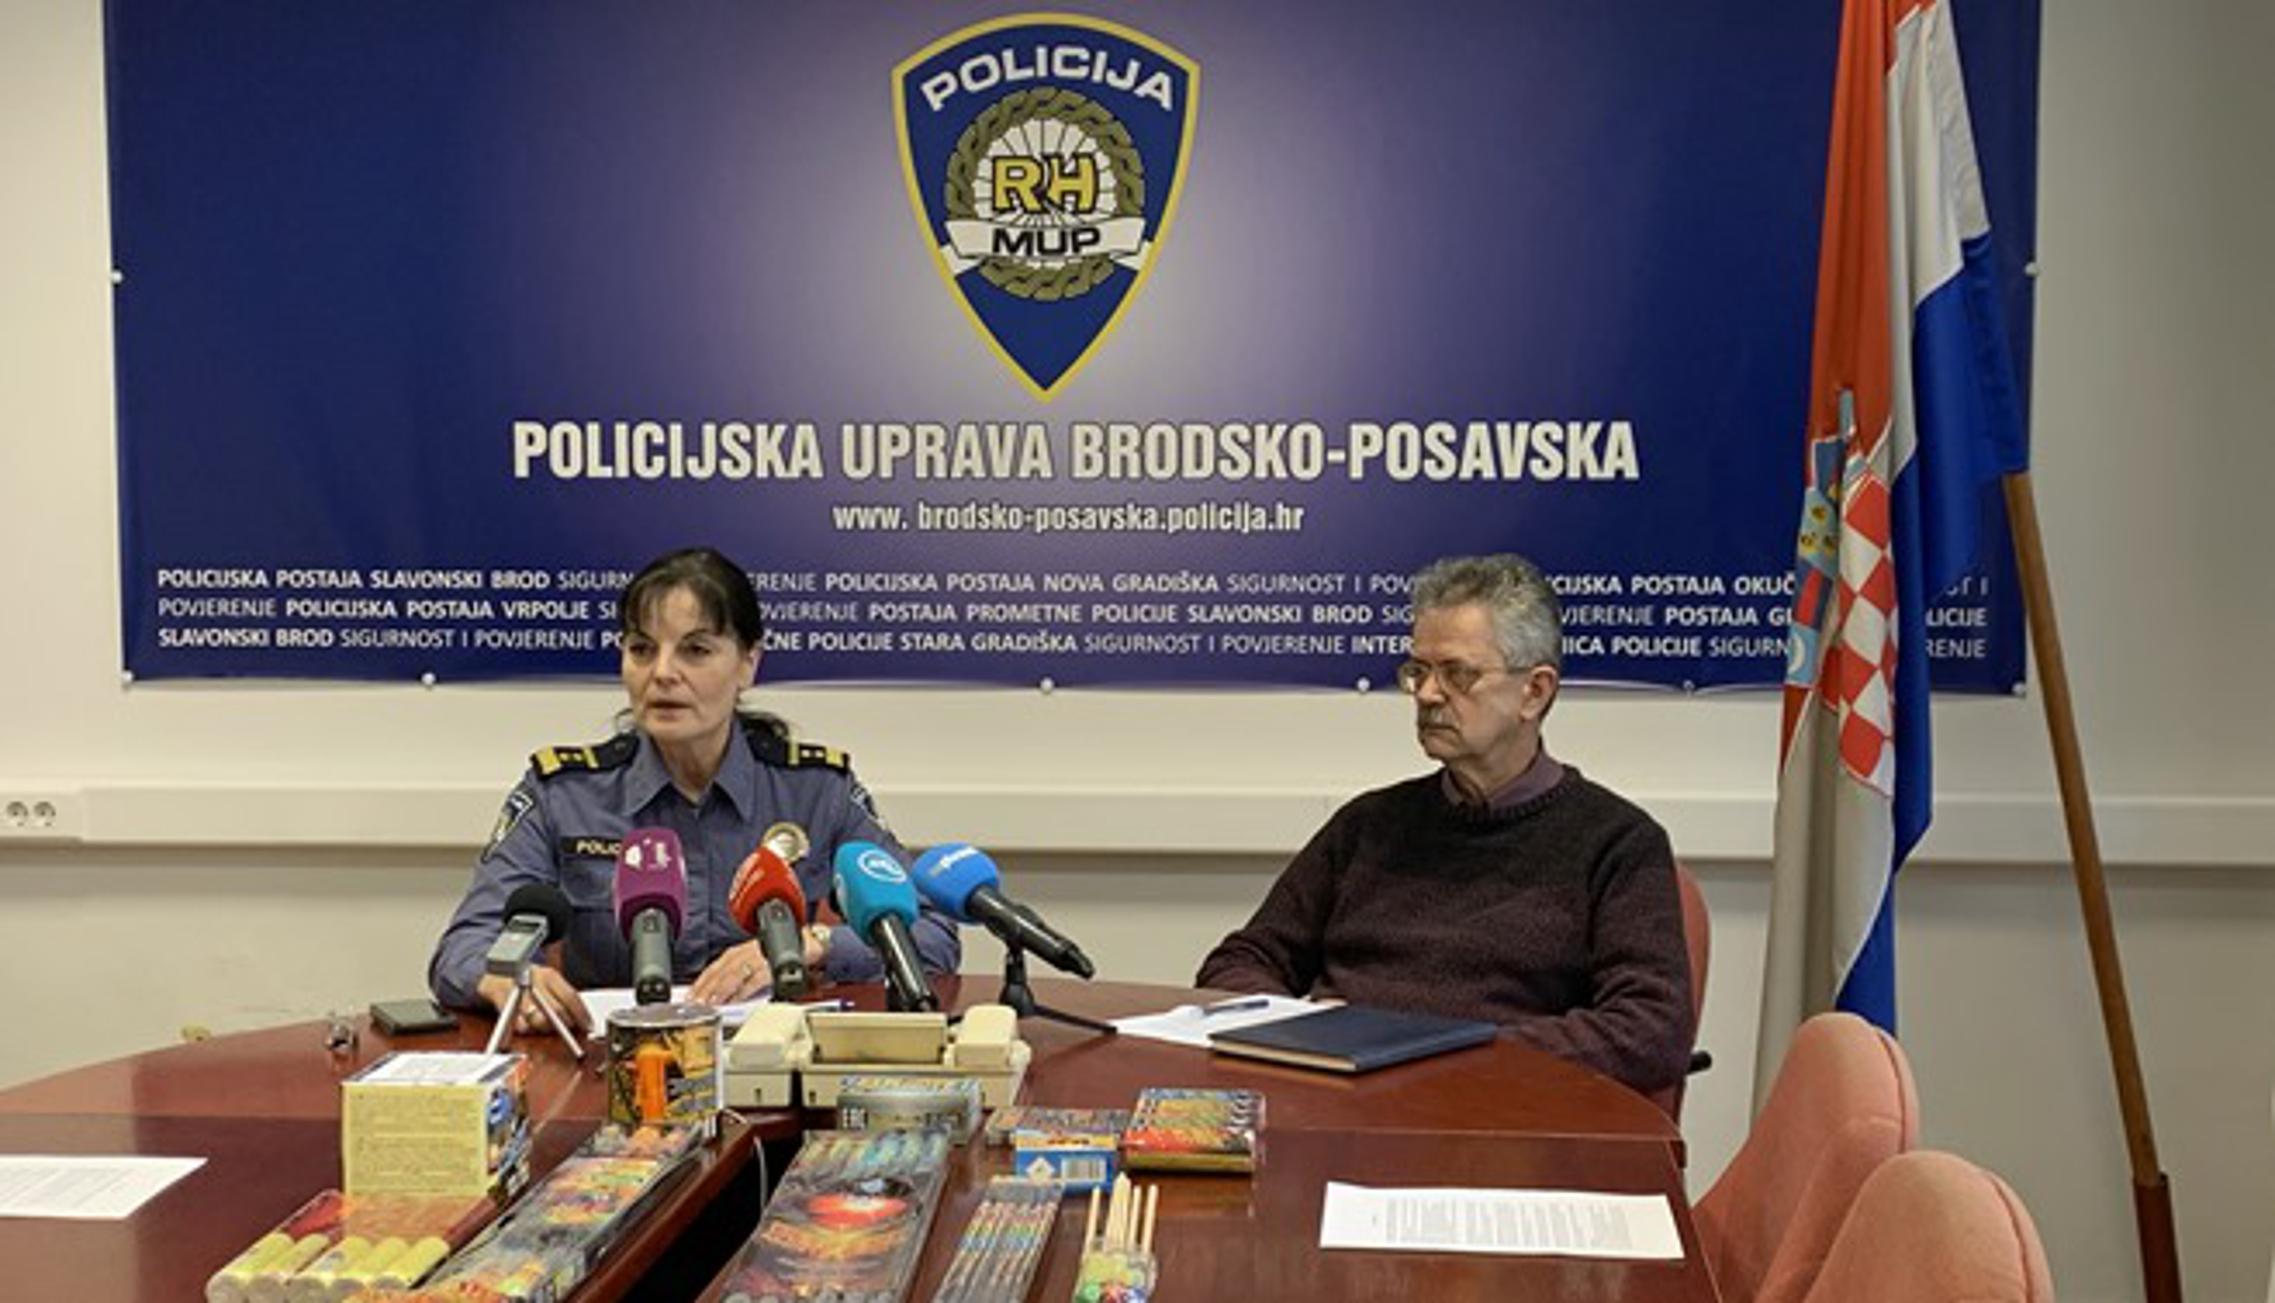 Kata Nujić i Branko Perković na današnjoj novinarskoj konferenciji.